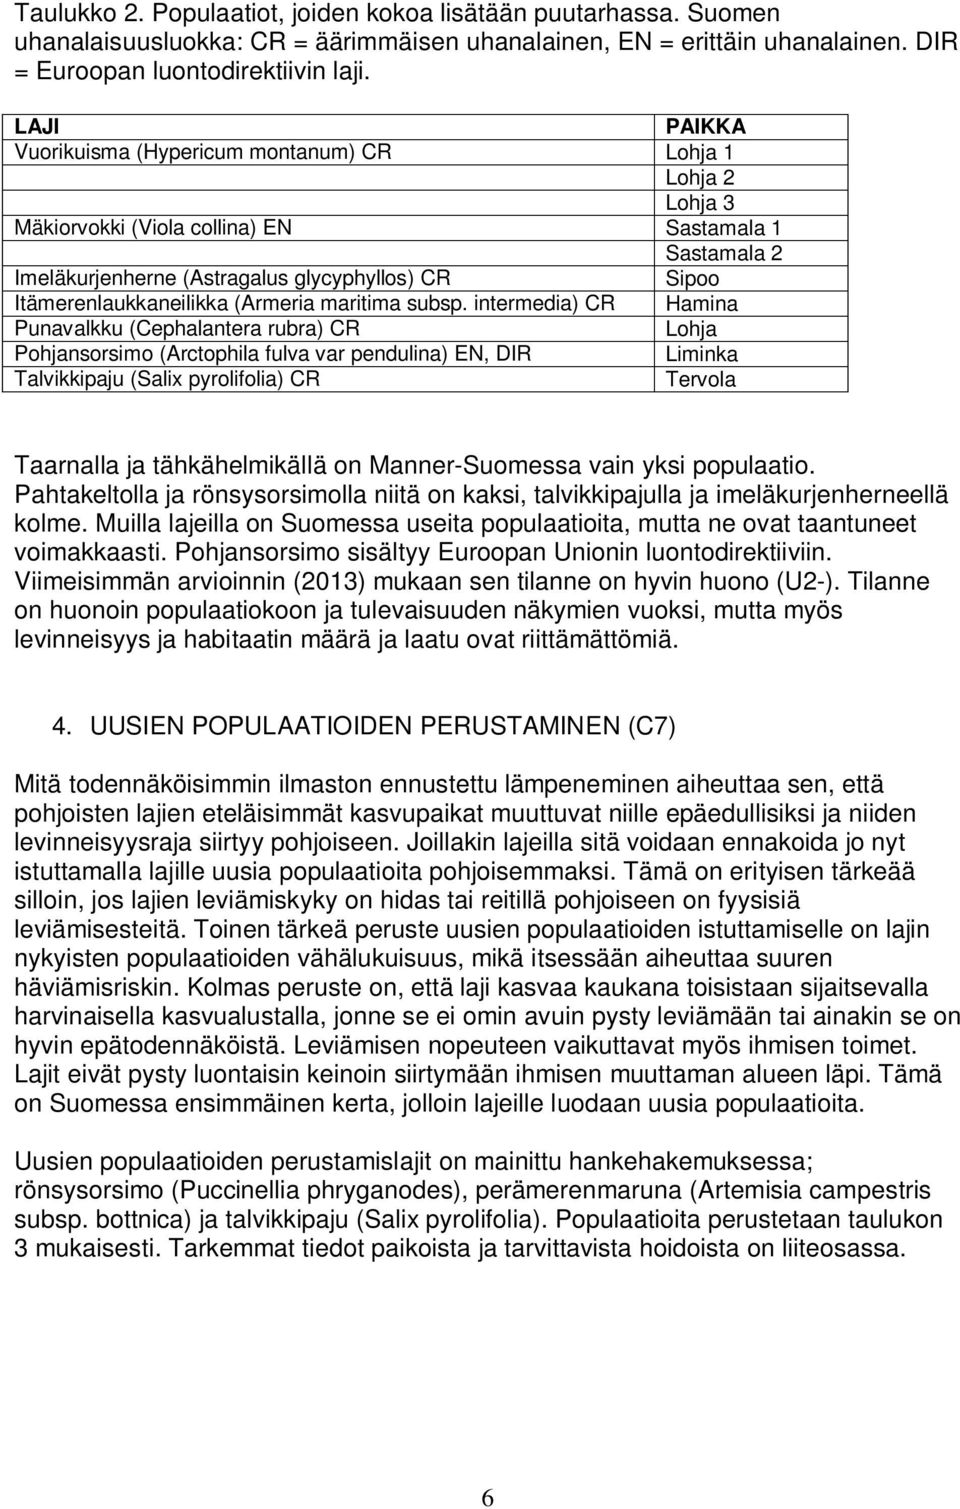 Itämerenlaukkaneilikka (Armeria maritima subsp.